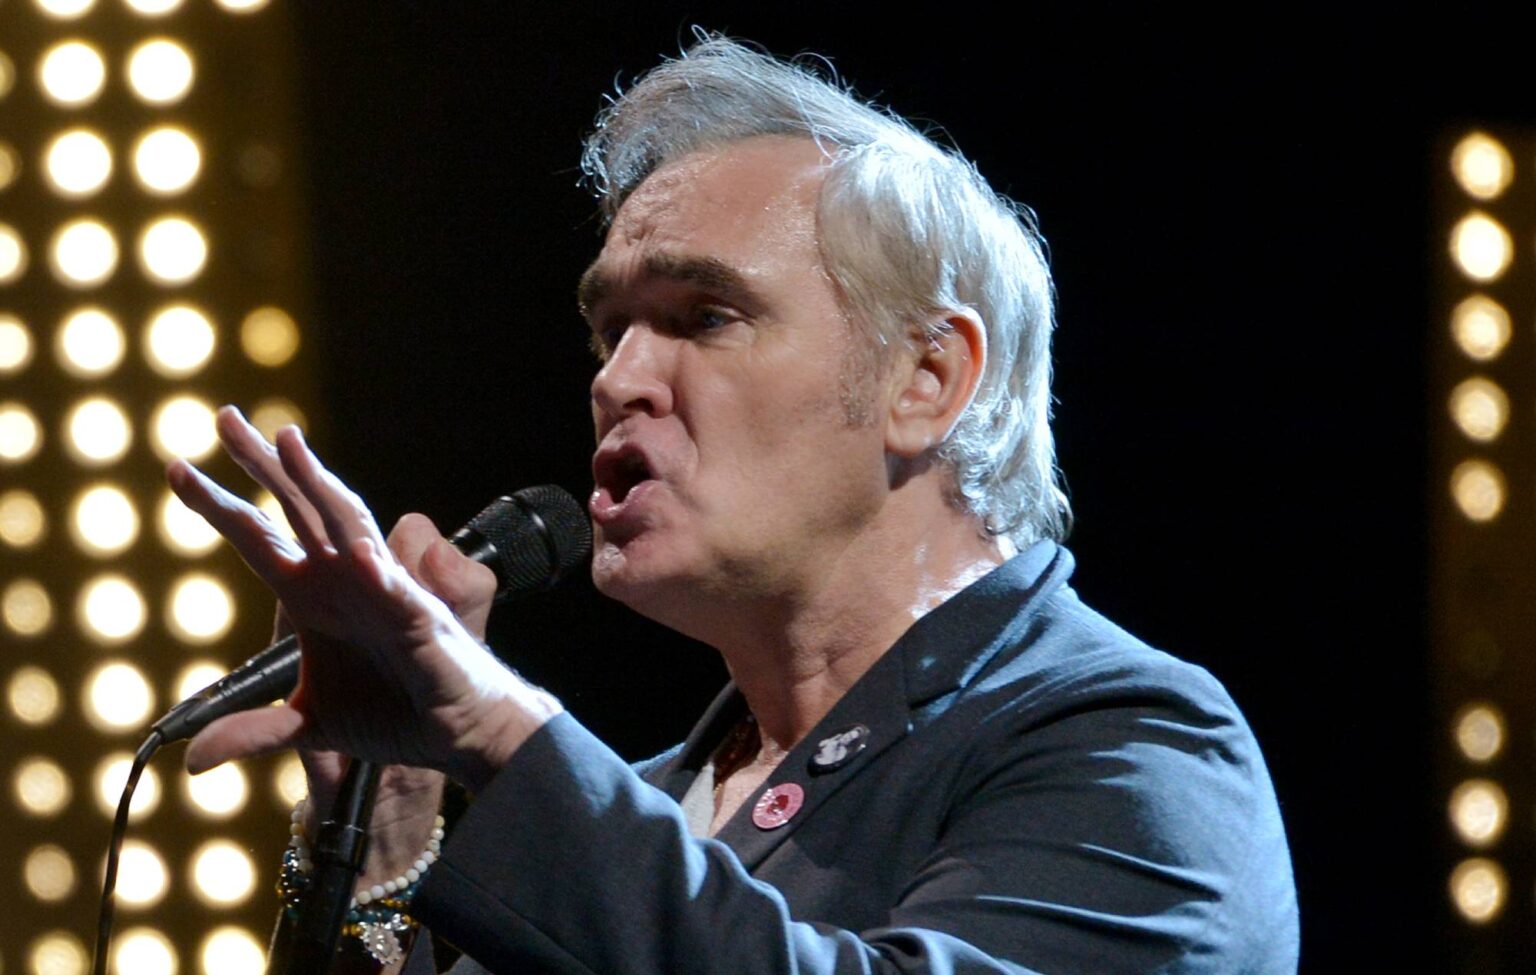 Morrissey afirma que foi “excluído” da “essência” e da história dos Smiths